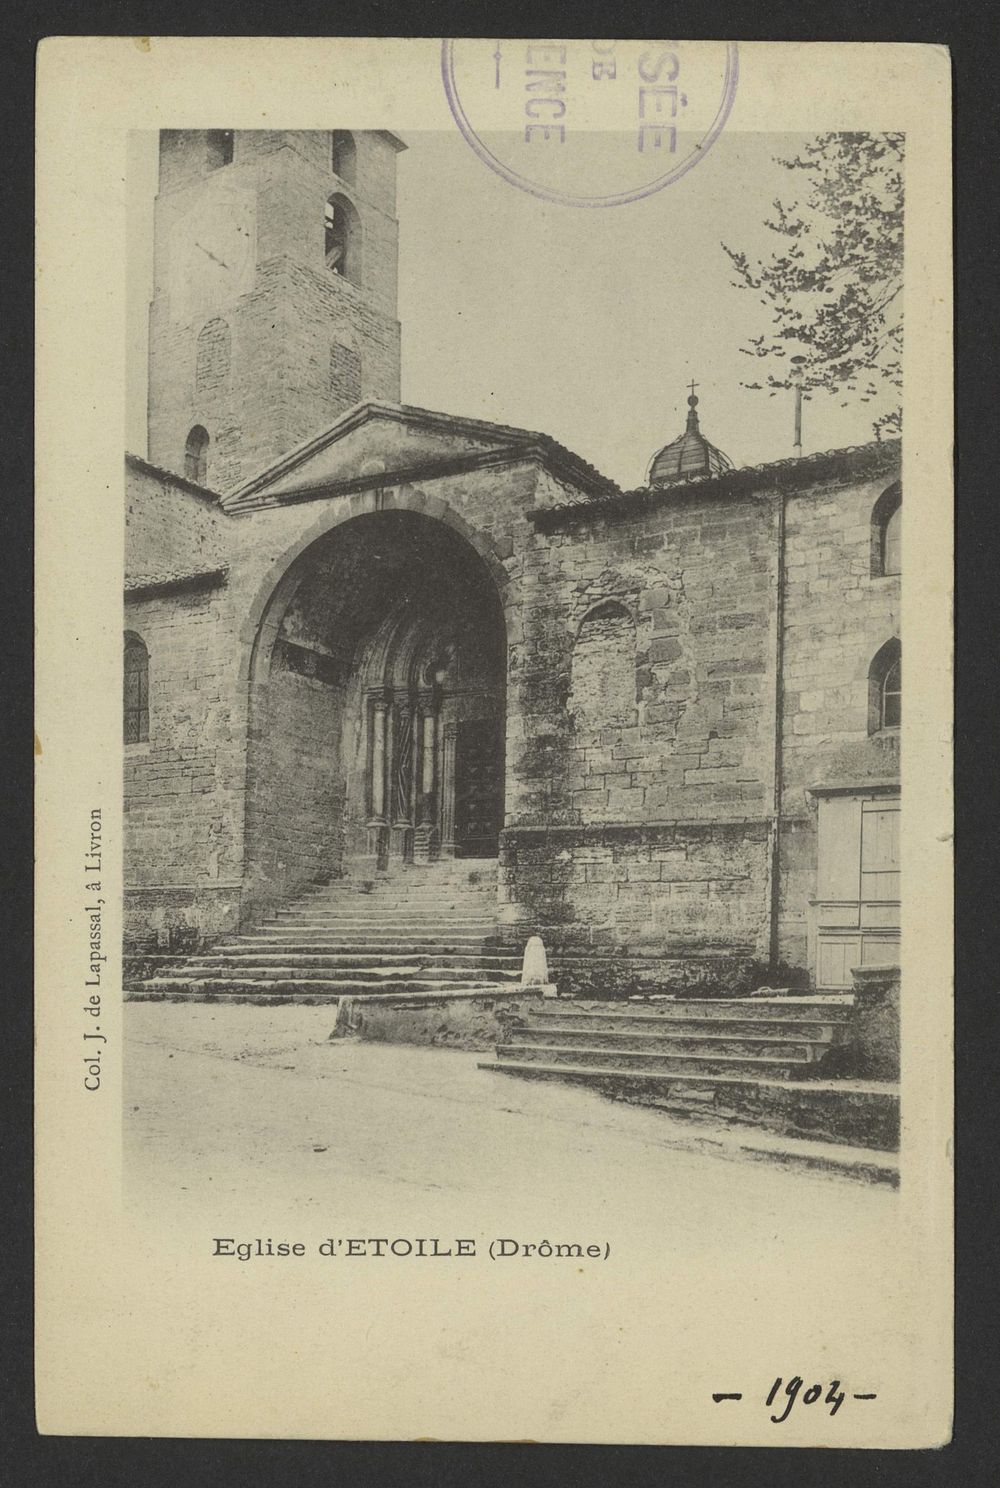 Eglise d'Etoile (Drôme)